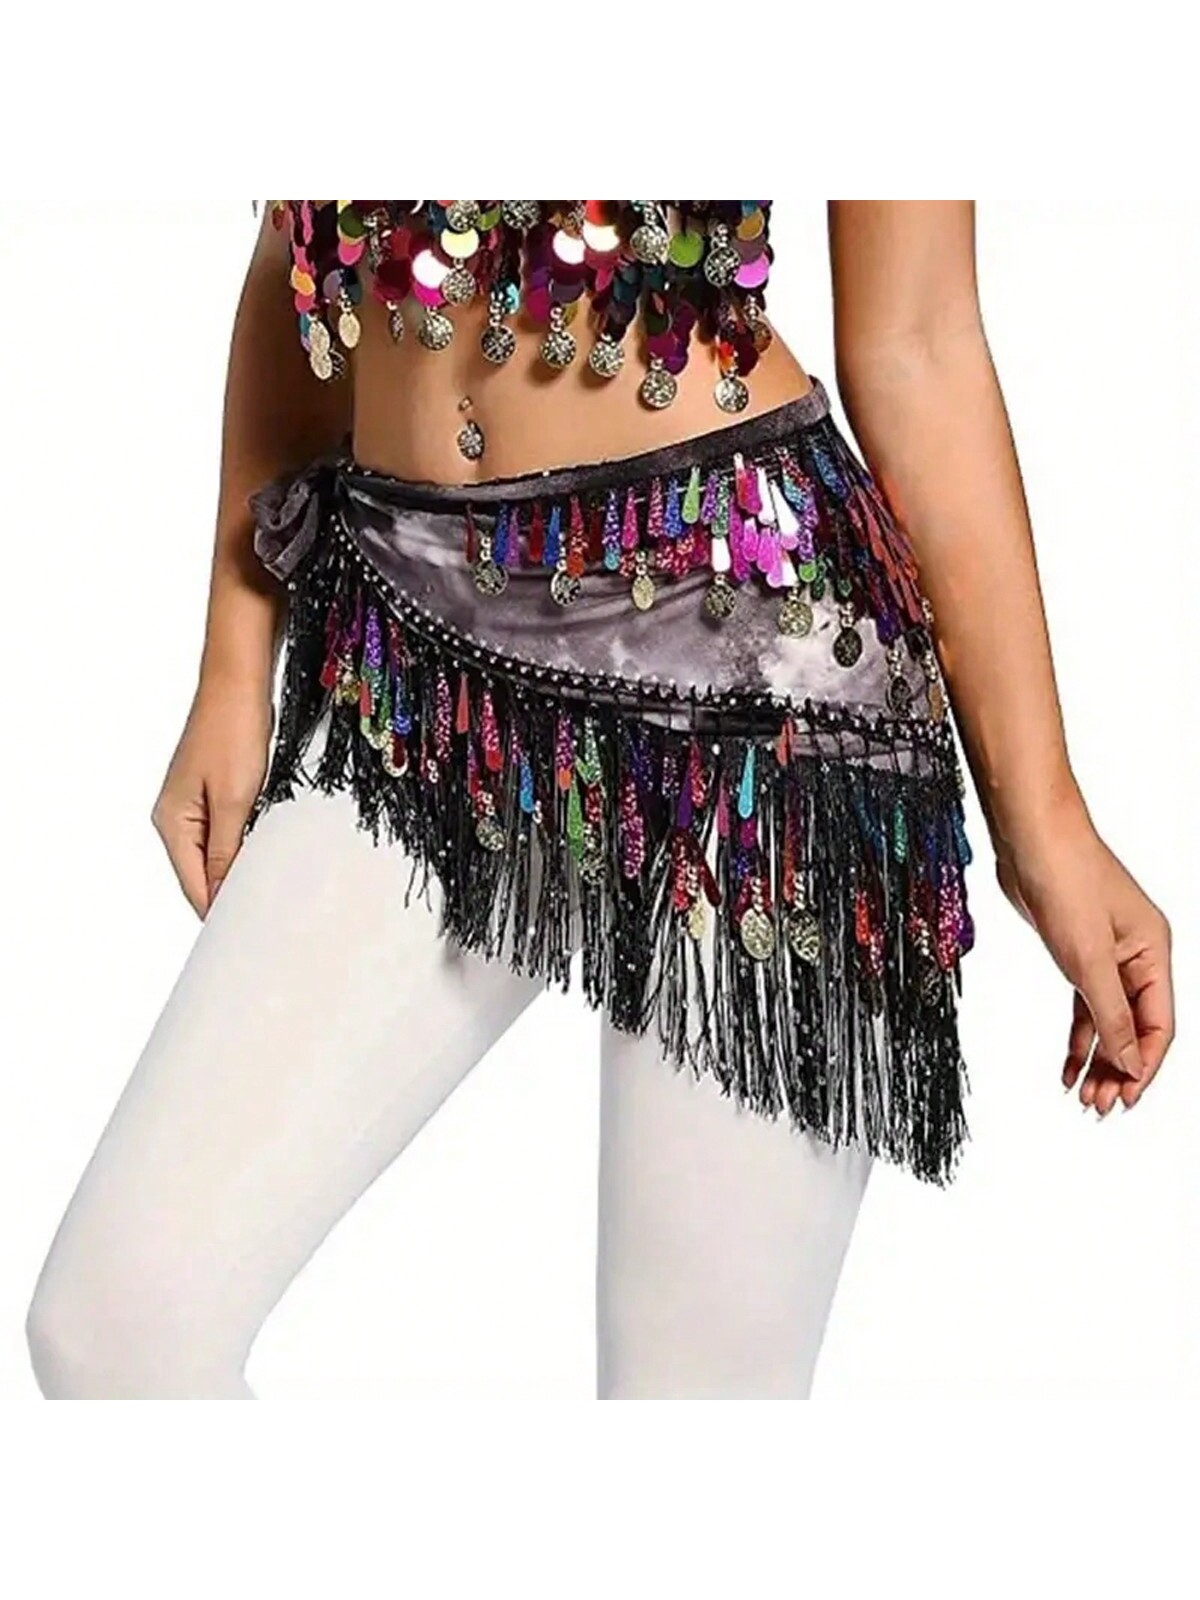 танцевальная юбка для болливуда 9 цветов танцевальная юбка для танца живота профессиональные индийские штаны для танца живота 2016 Женская поясная цепочка для танца живота, многоцветный